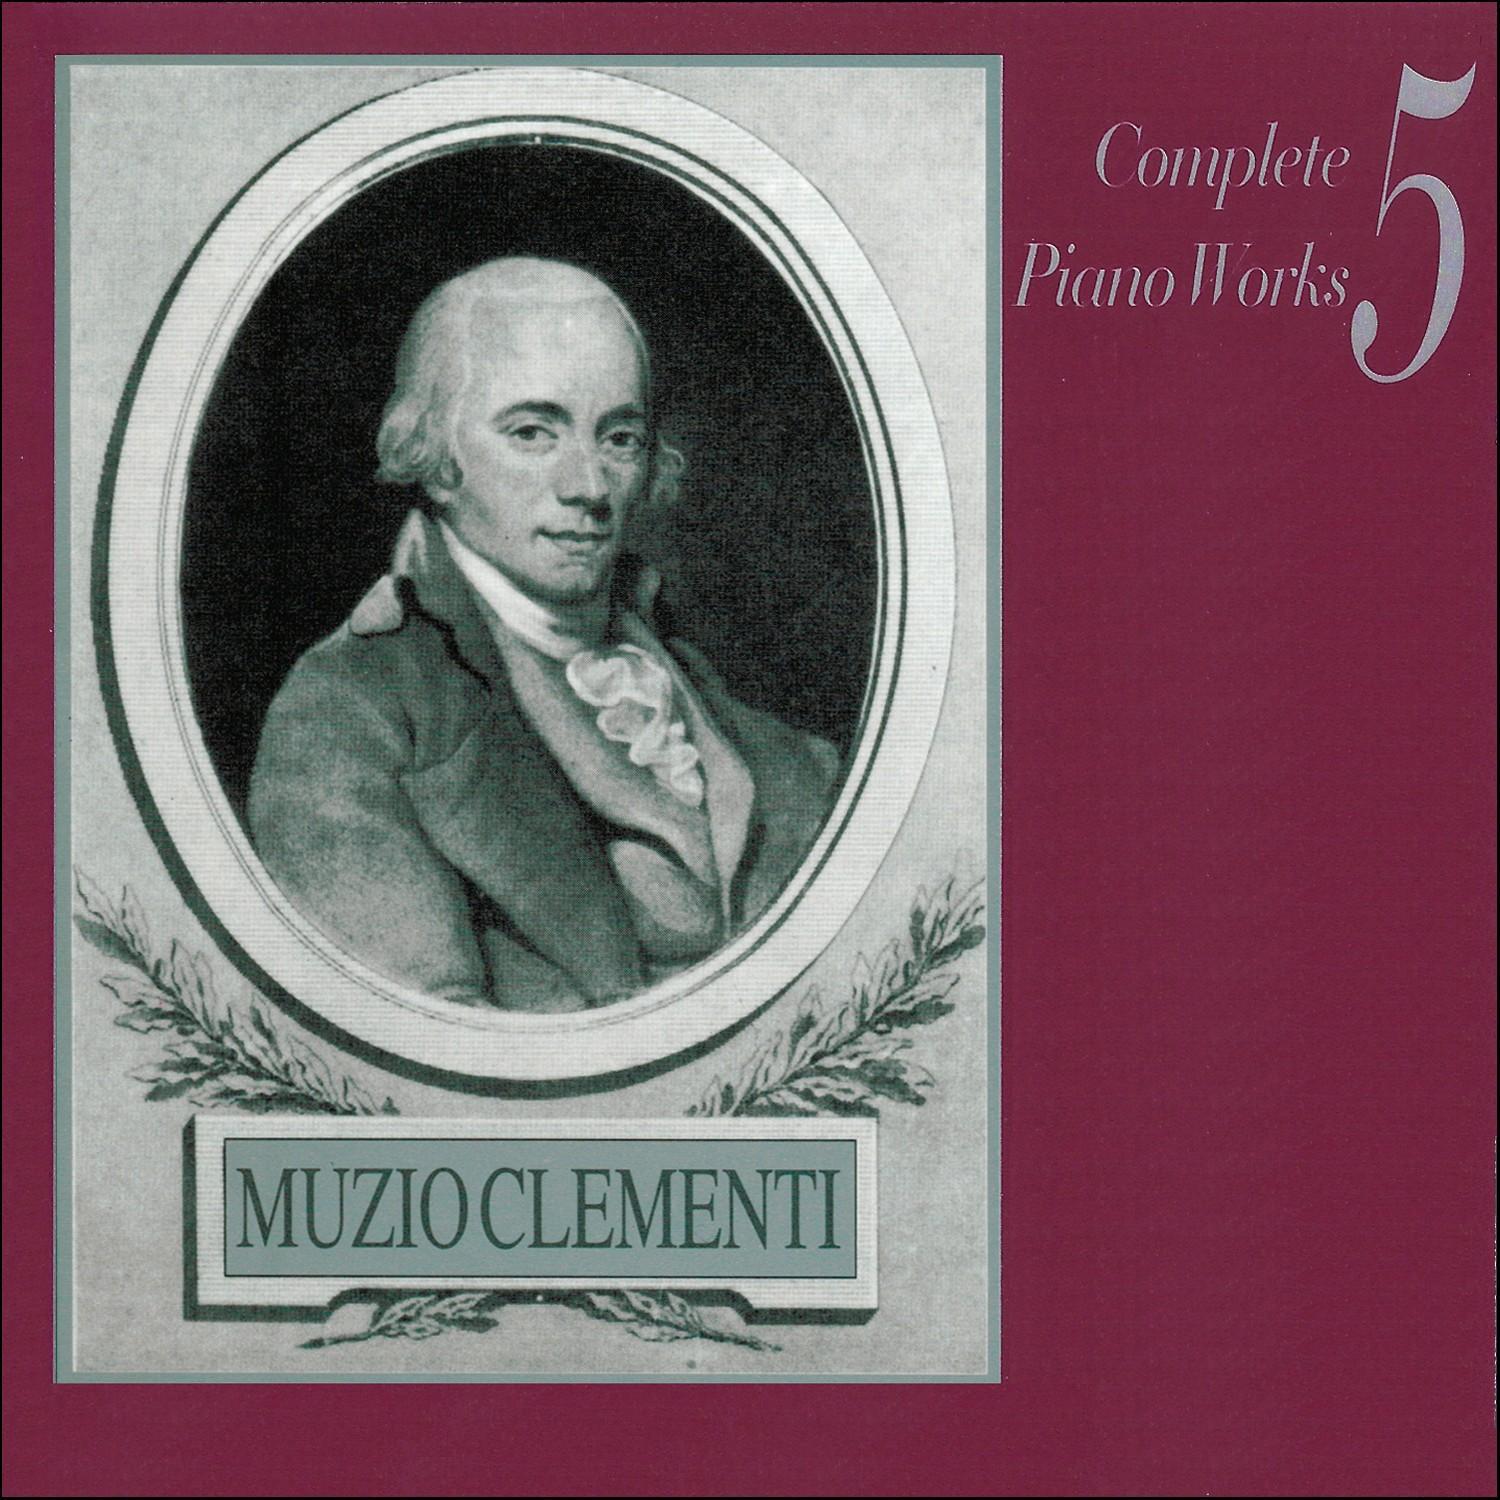 Muzio Clementi - Sonata Op. 5, No. 1 in B flat major: ll. Rondo - Allegro con spirito